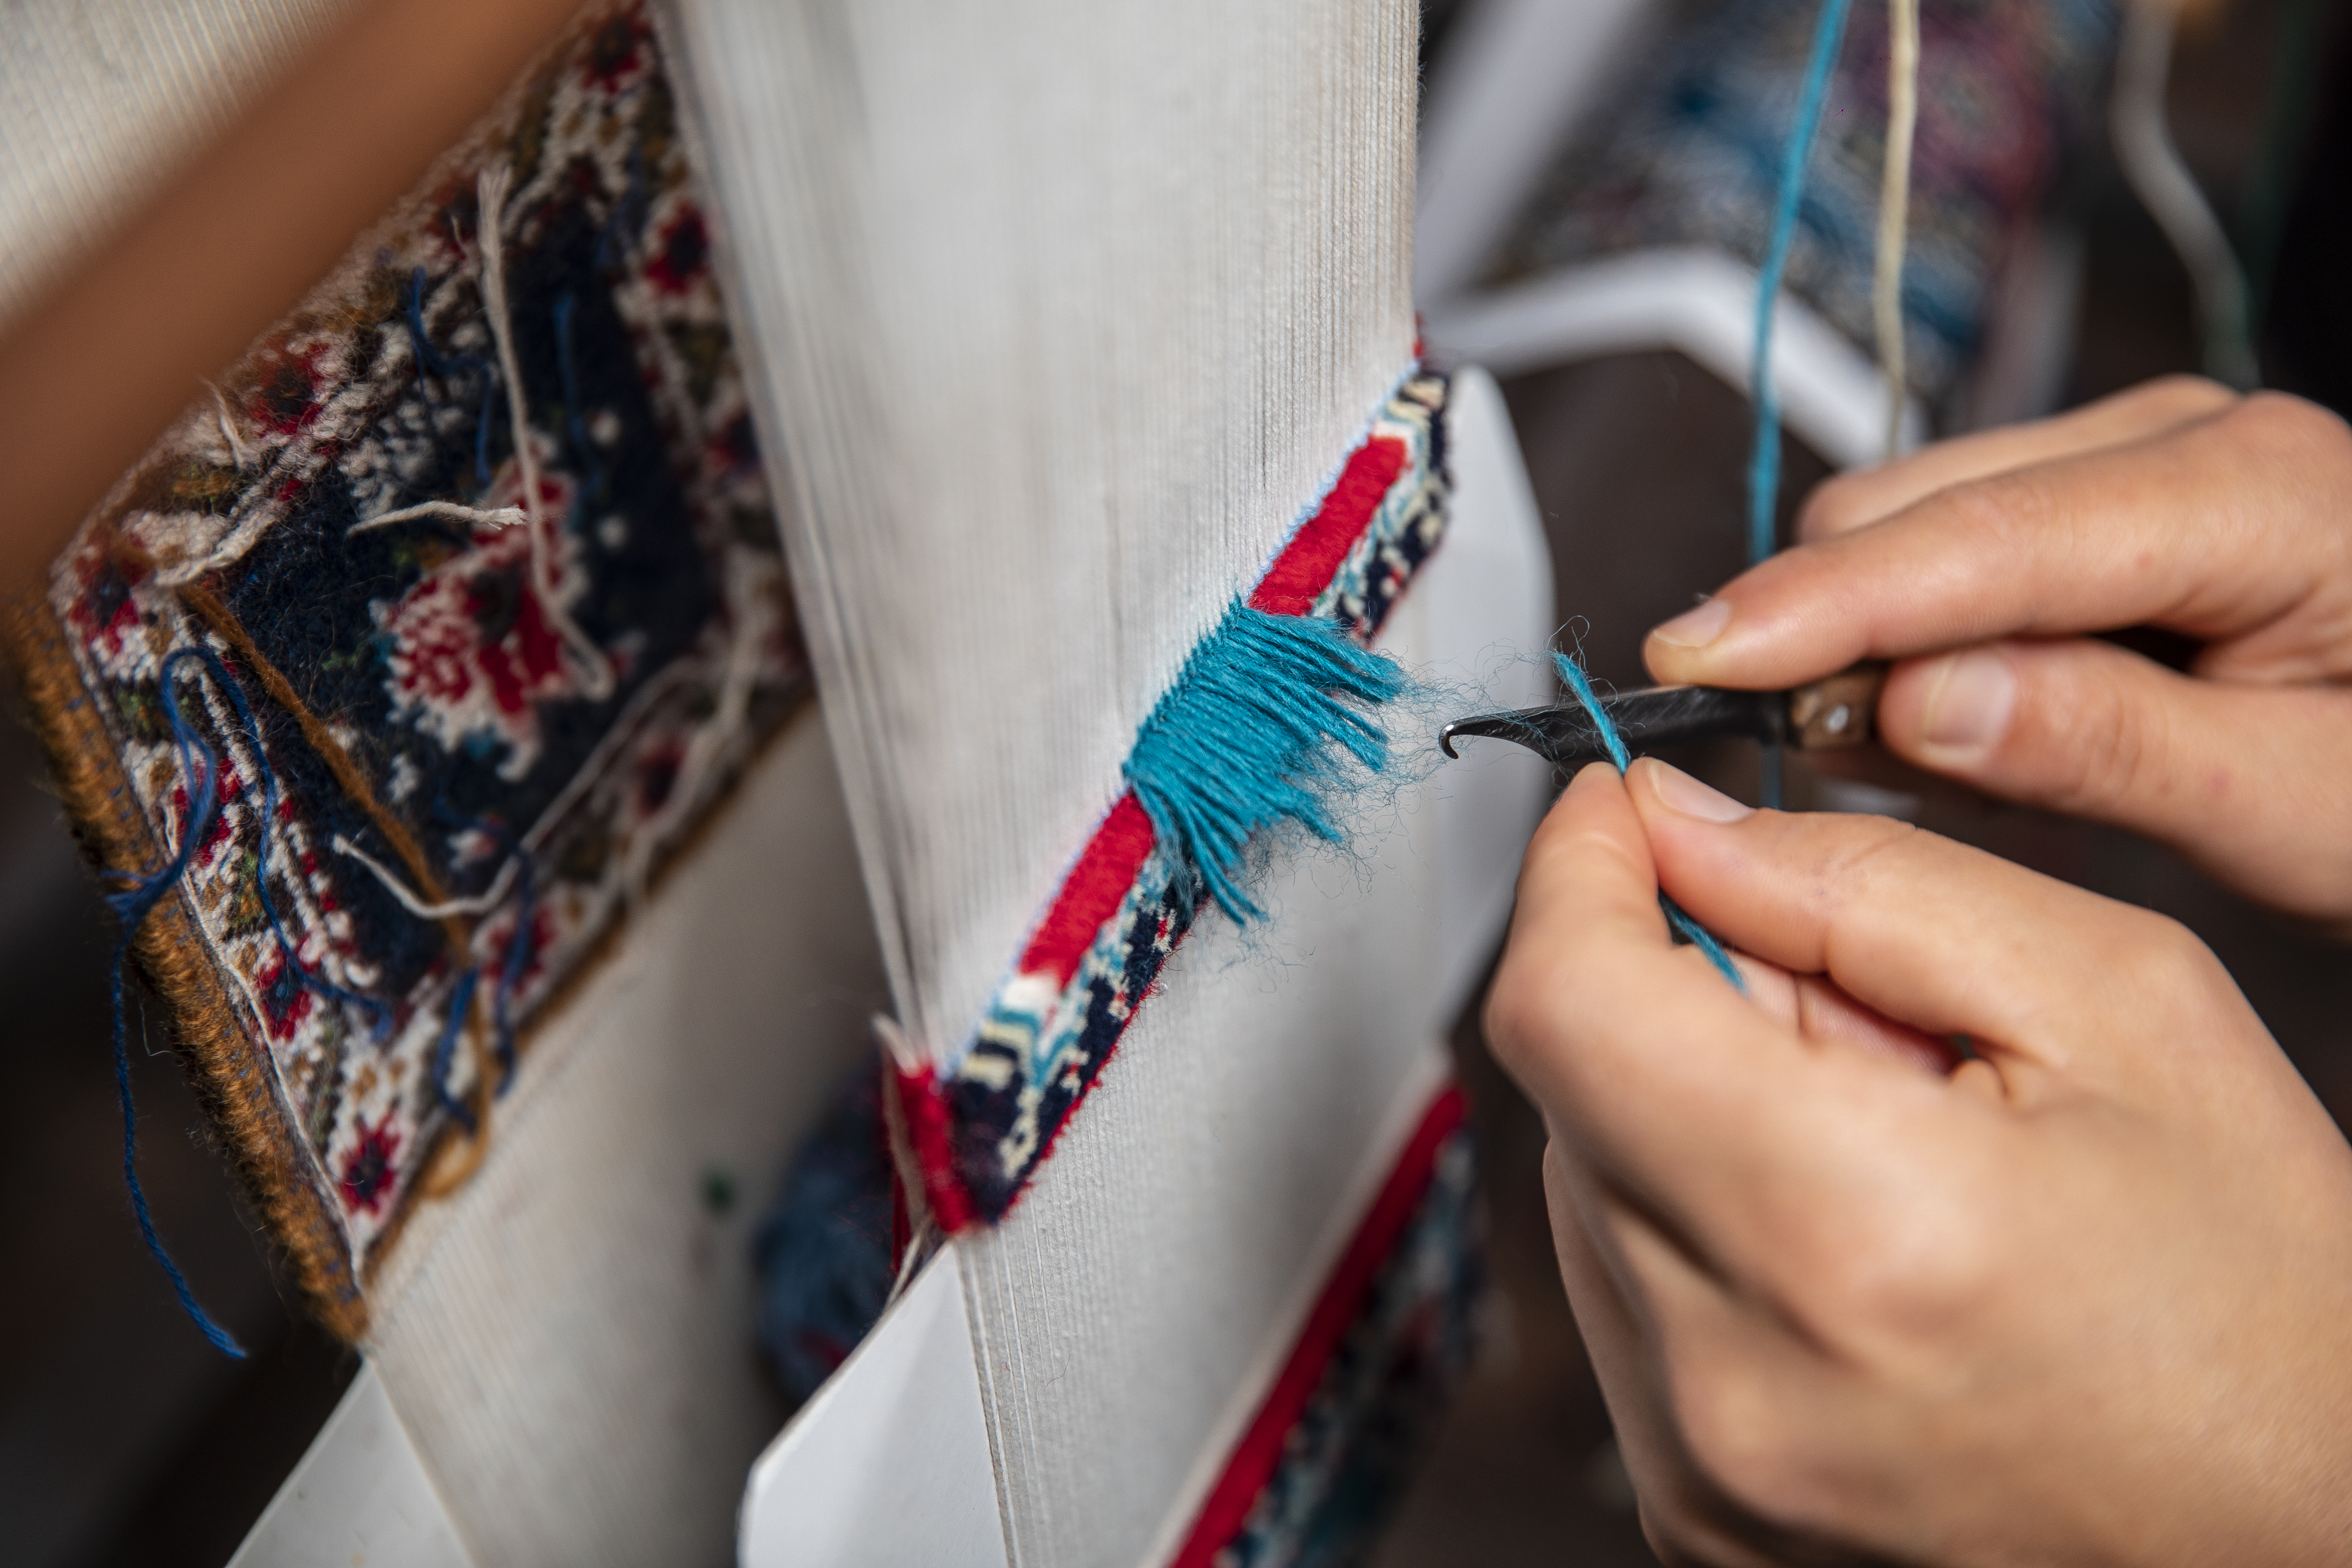 Técnicas y procesos del arte textil: bordado, tejido, teñido, entre otros